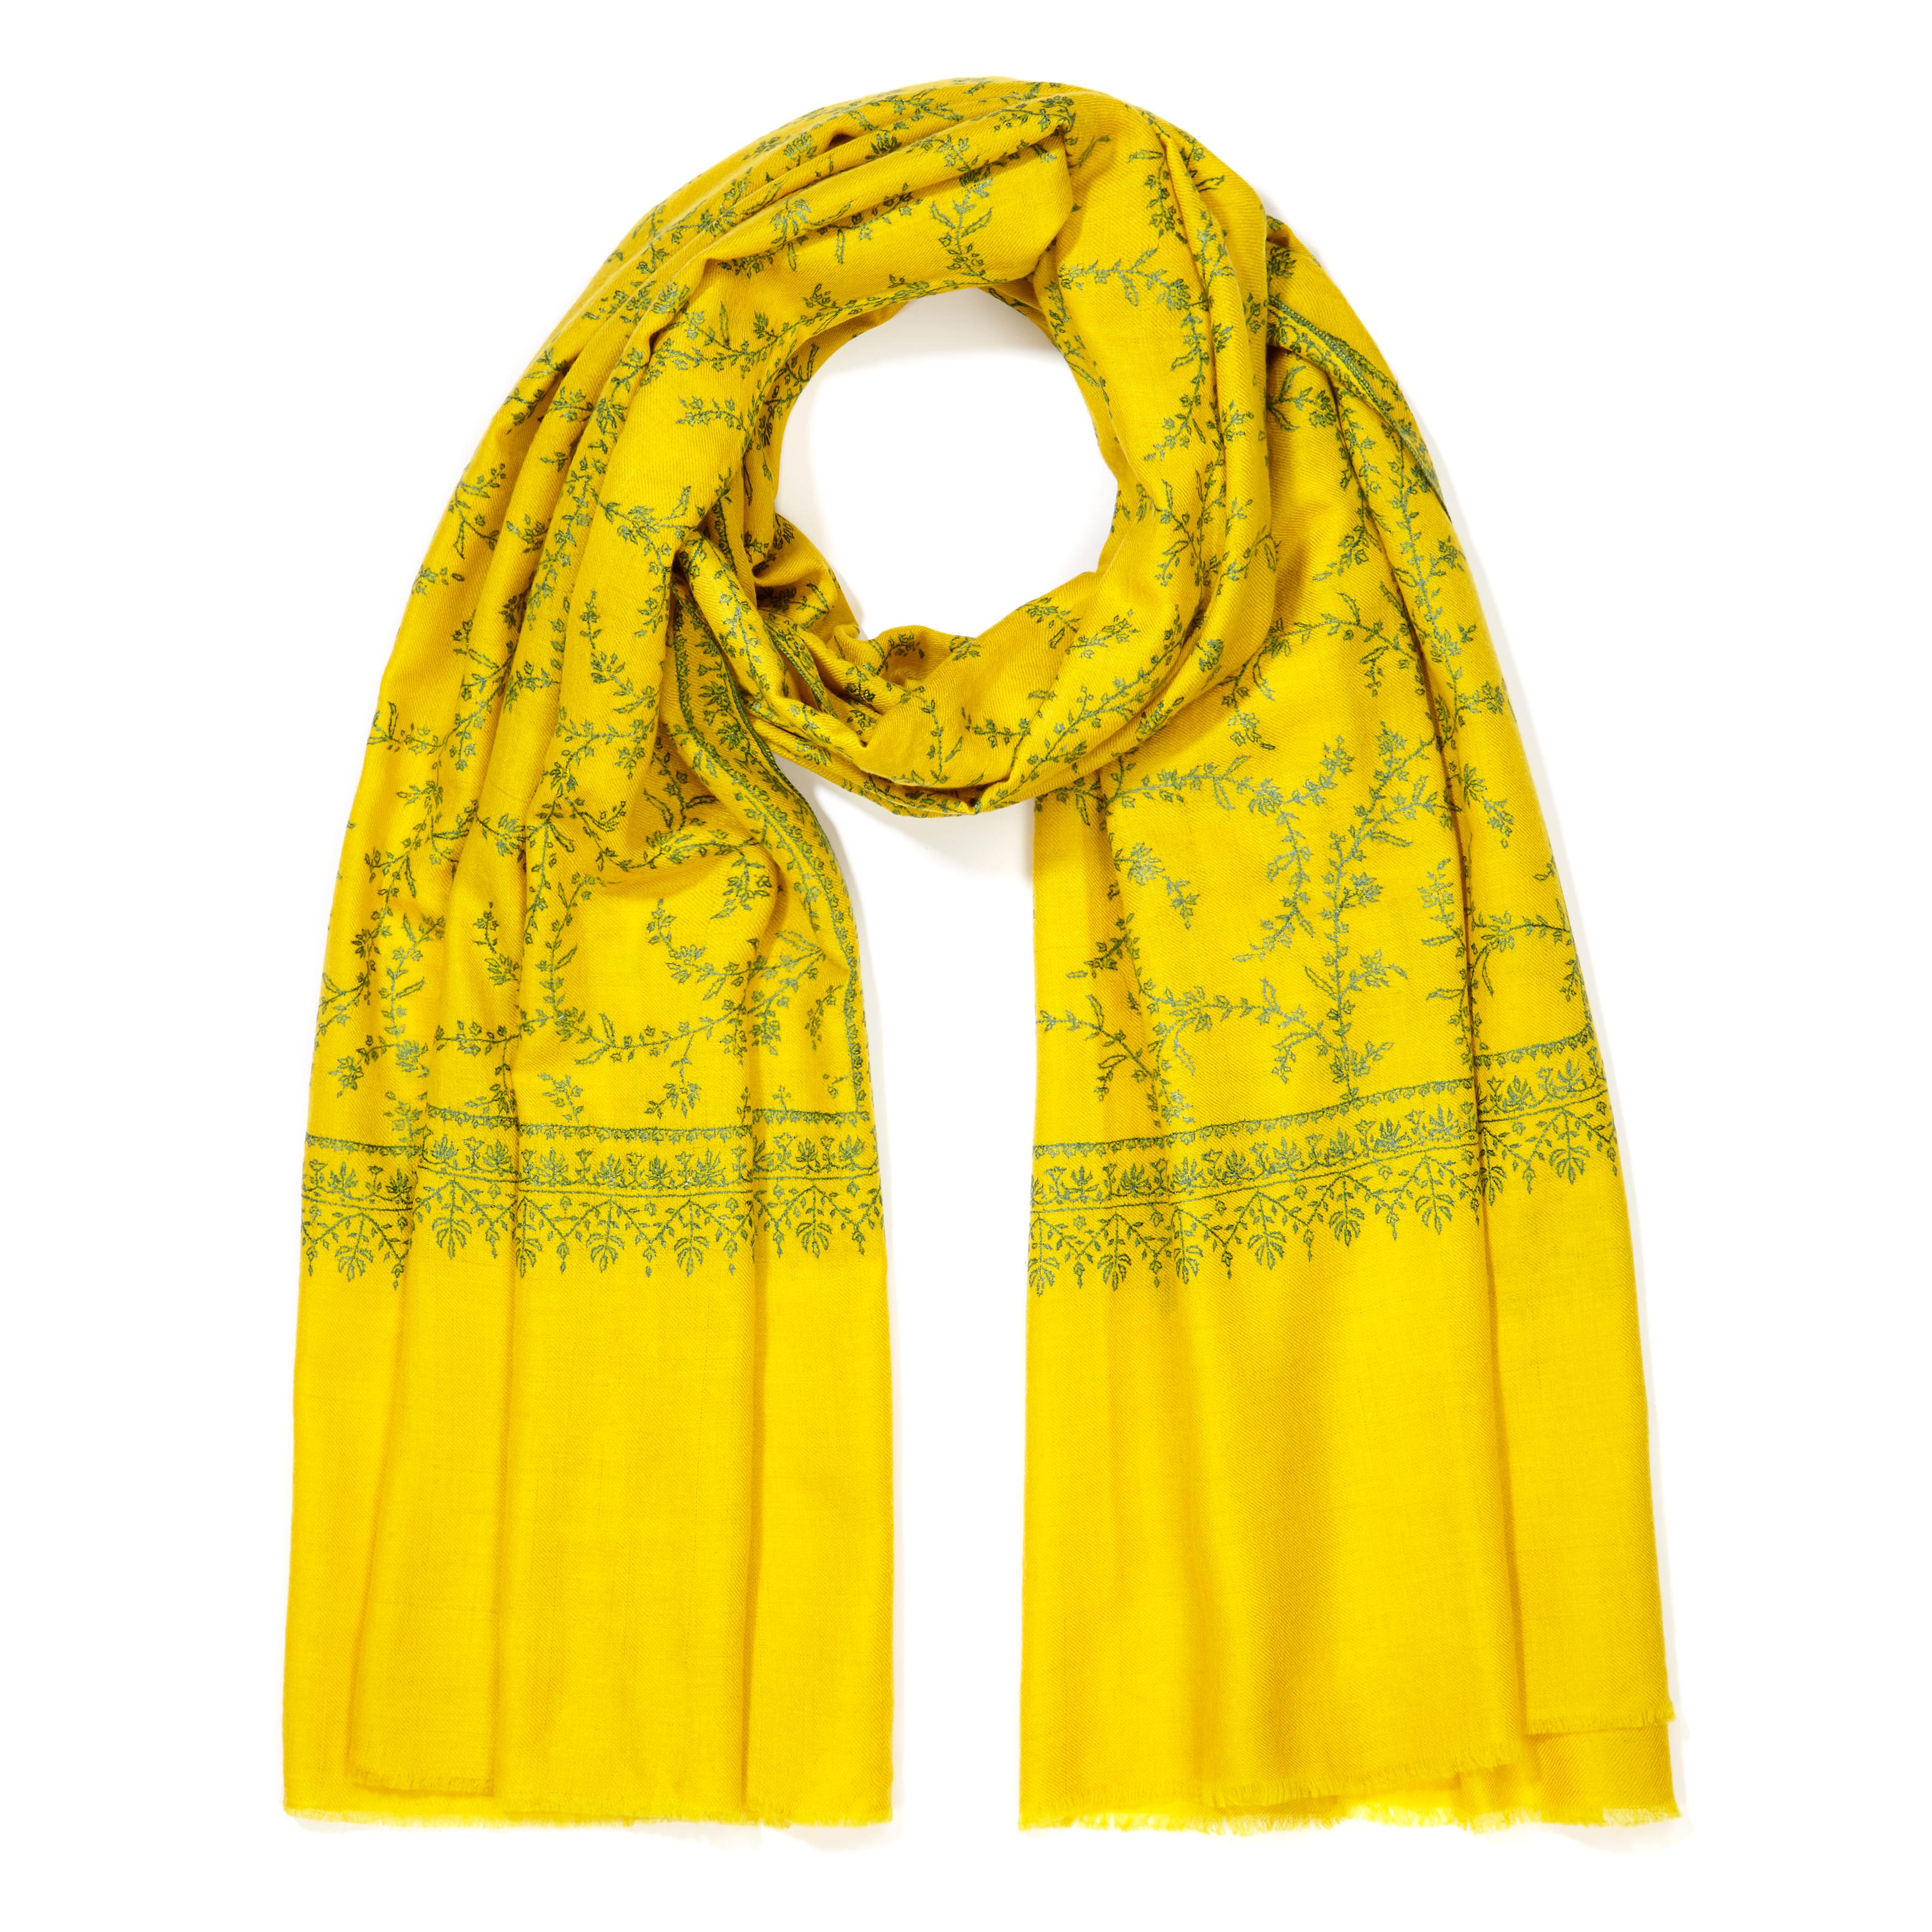 Handbestickter Schal aus 100% Kaschmir in Gelb Made in Kashmir Indien 

Der Schal von Verheyen London ist aus feinstem, besticktem, gewebtem Kaschmir aus Kaschmir gesponnen.  Die Stickerei kann bis zu 1 Jahr in Anspruch nehmen, und jedes Stück ist